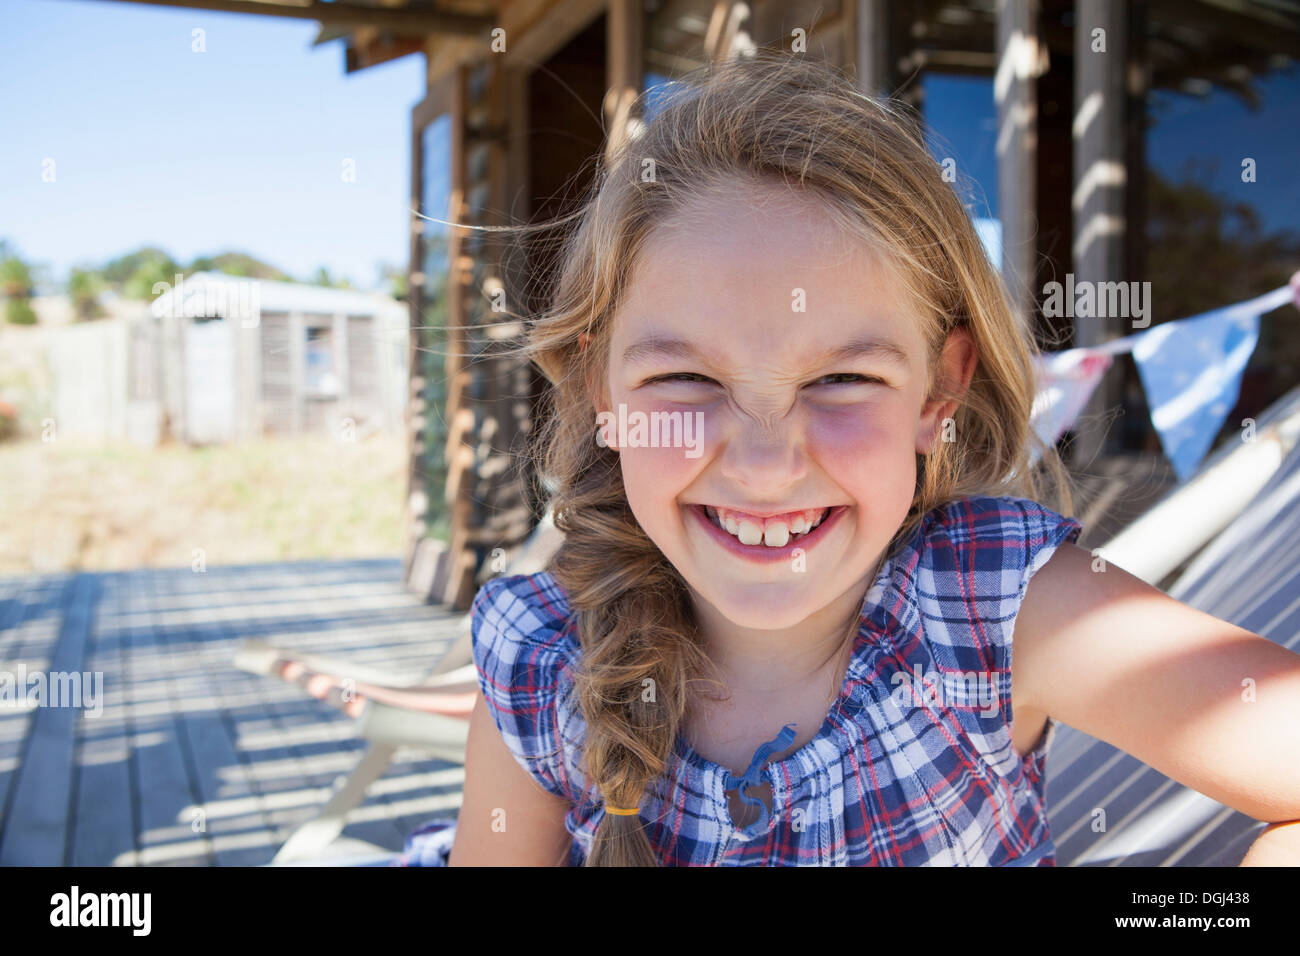 Portrait of Girl wearing chemisier à carreaux, smiling Banque D'Images